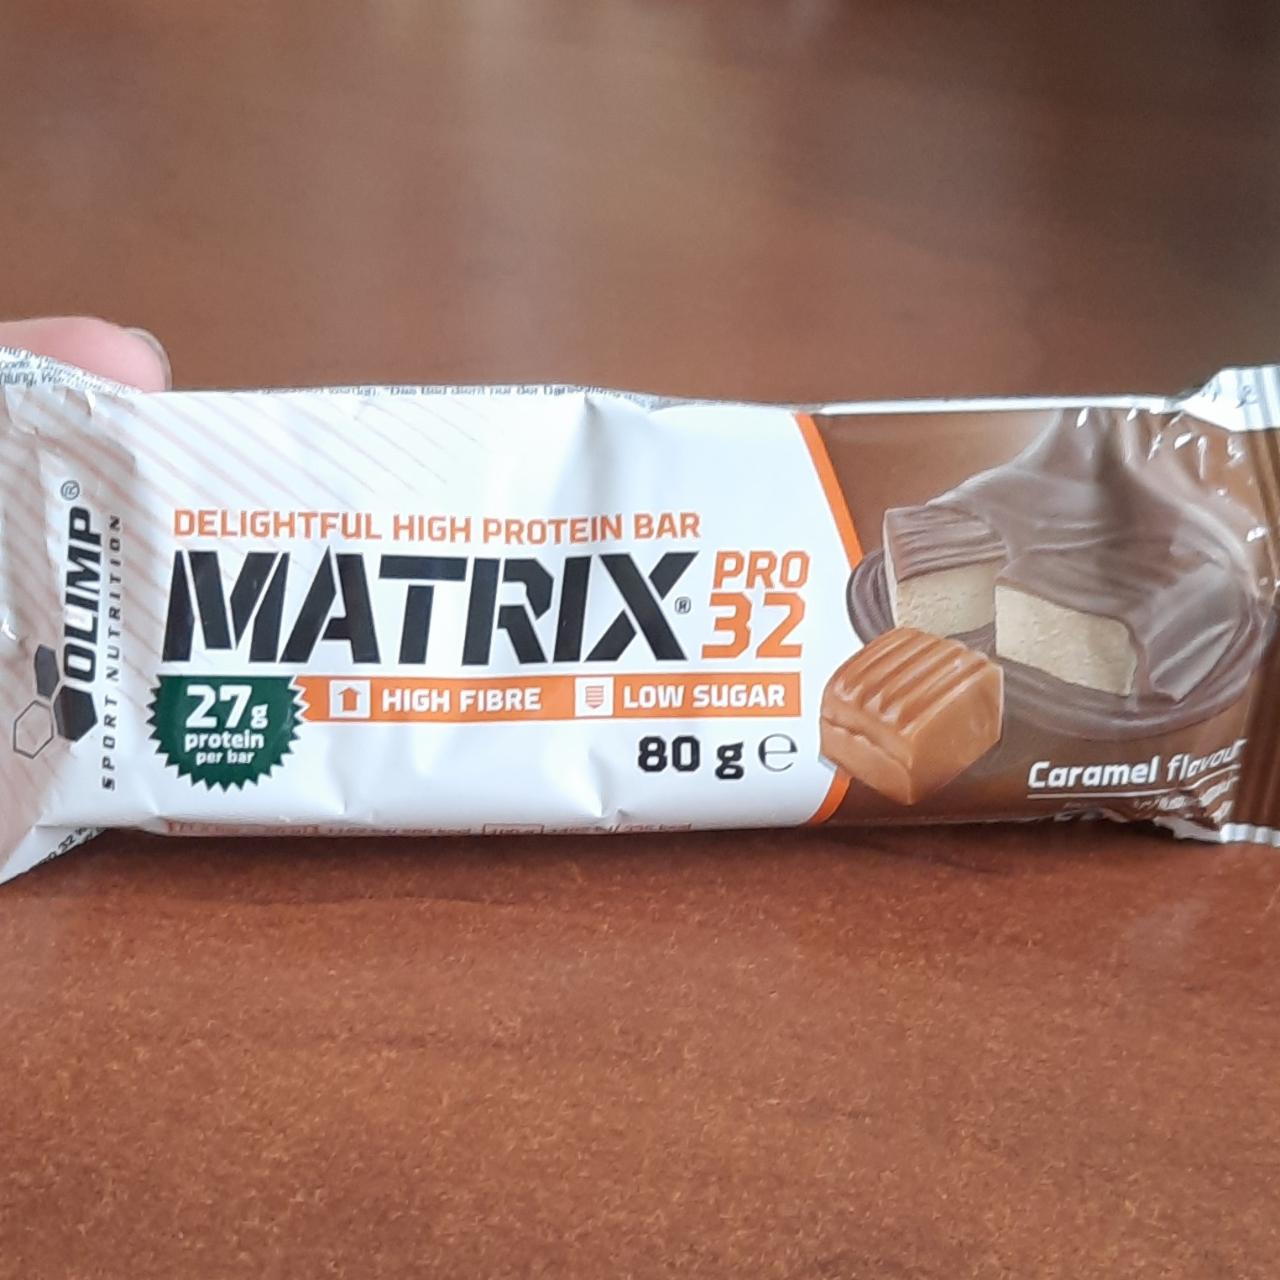 Фото - Батончик протеиновый Matrix Pro 32 со вкусом карамели Olimp Nutrition